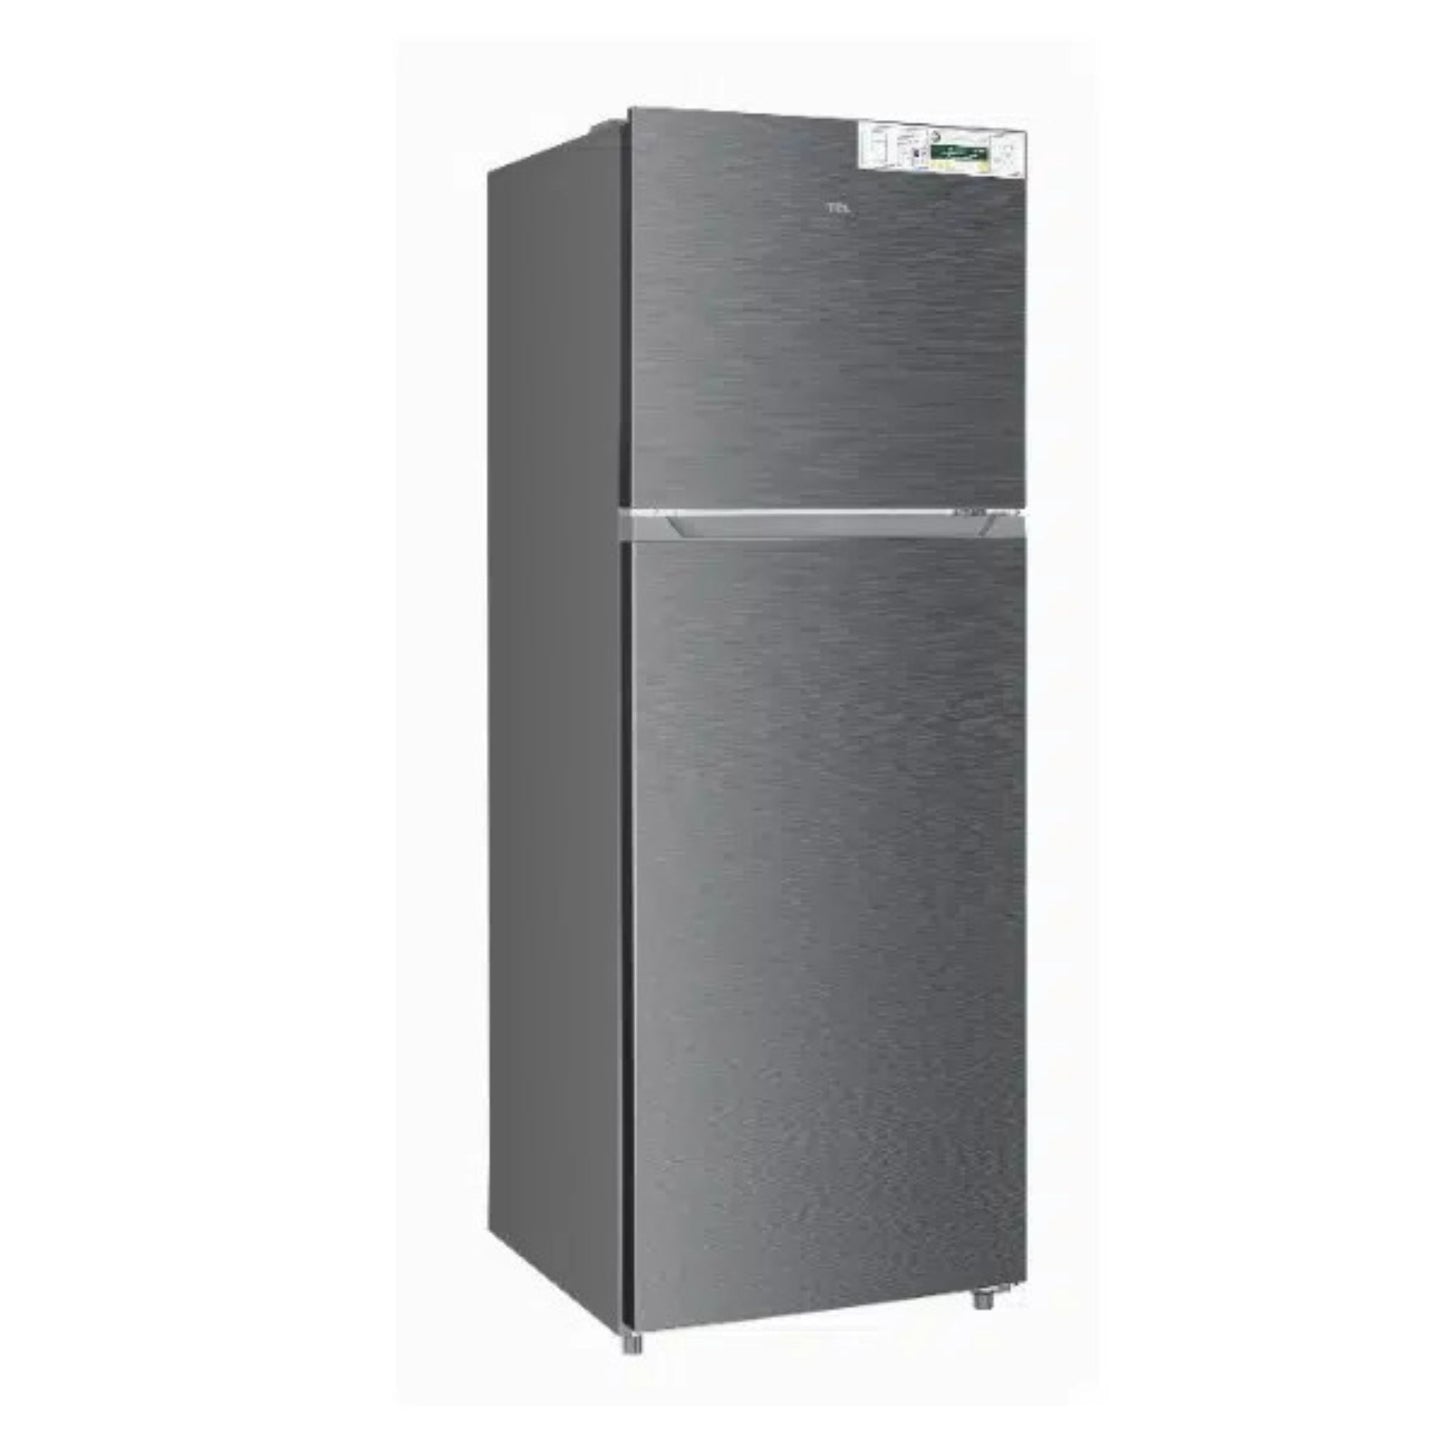 TCL 433L Refrigerator, P433TMN